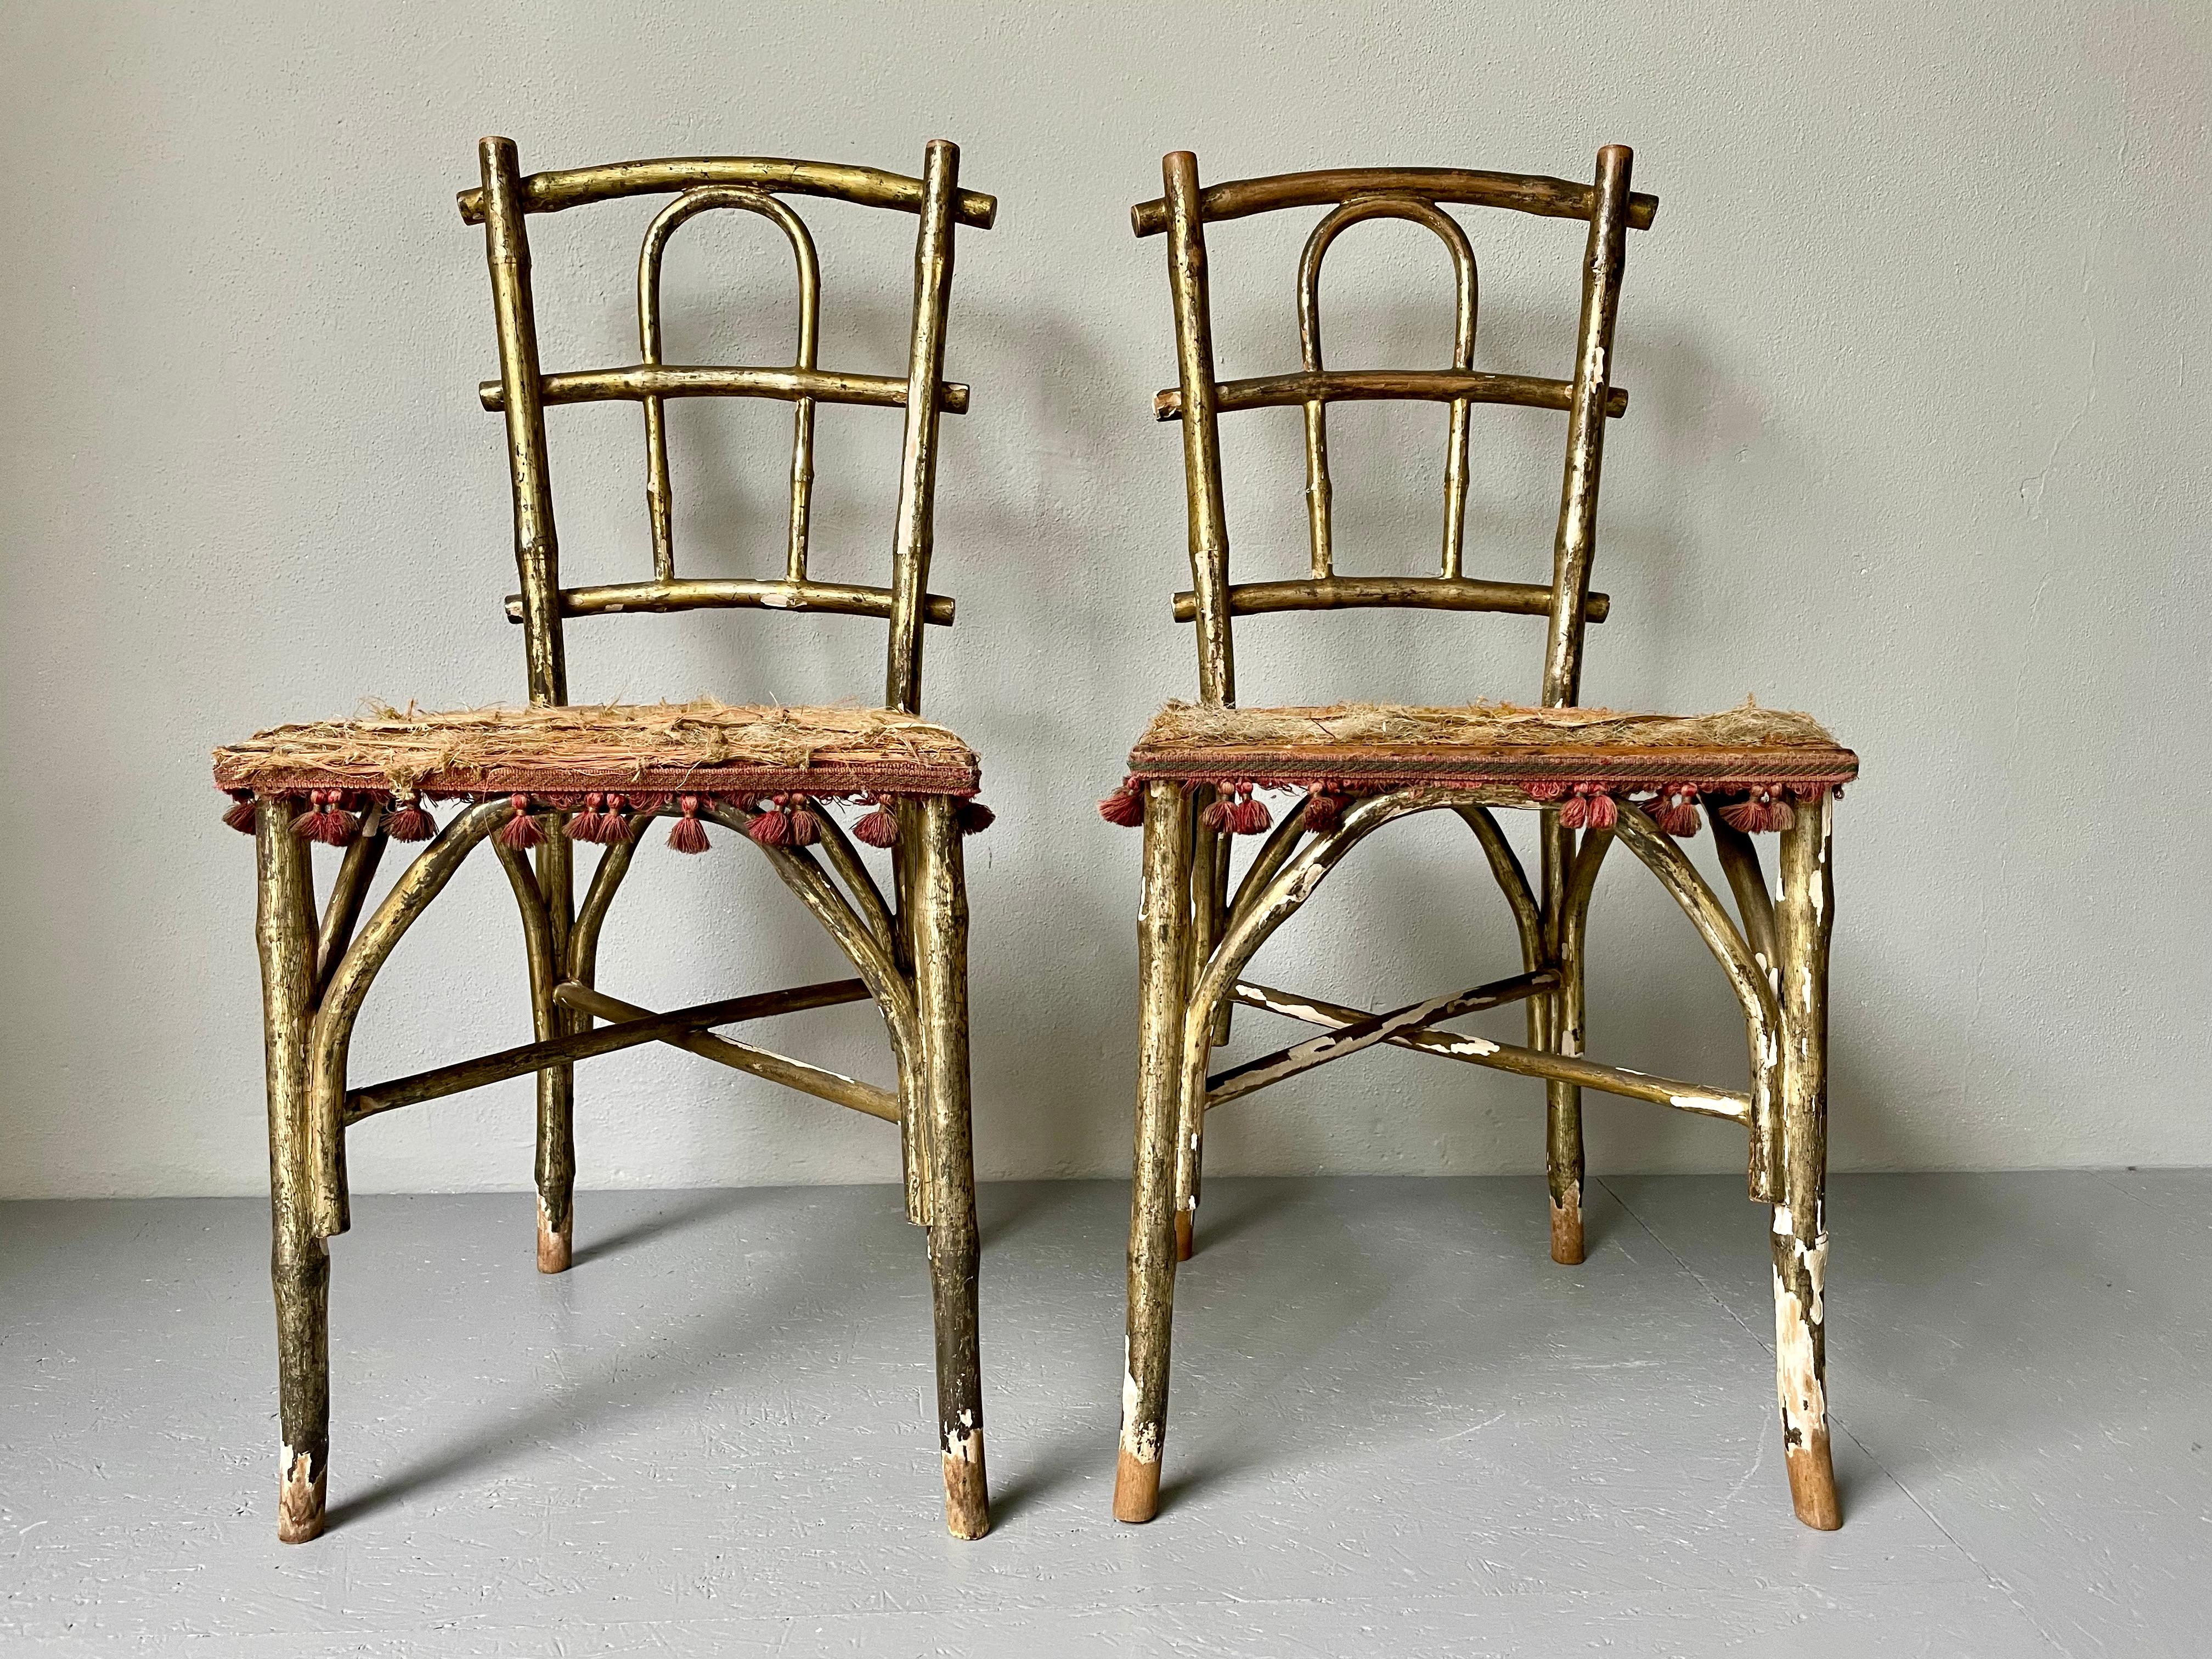 Bugholz-Salonstühle von Thonet aus dem 19. Jahrhundert. Schöne goldene Patina und verblichener Stoff. Beide Stühle weisen starke Alterserscheinungen auf, abblätternde Goldpatina, ausgewaschener Sitzstoff & dennoch bleibt der Charme erhalten. Beide